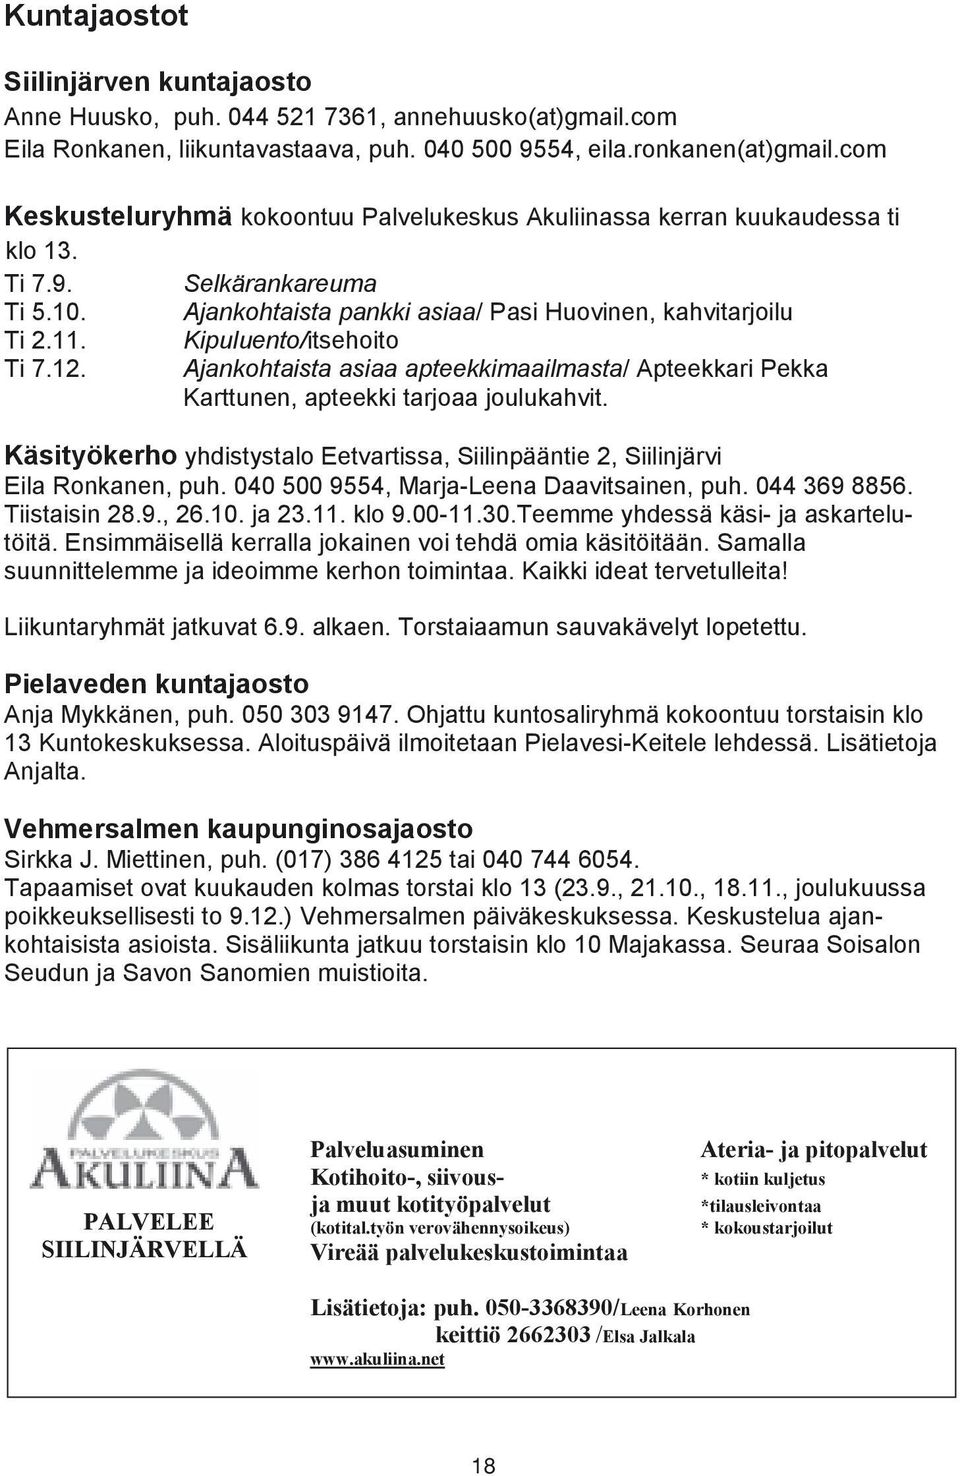 Kipuluento/itsehoito Ti 7.12. Ajankohtaista asiaa apteekkimaailmasta/ Apteekkari Pekka Karttunen, apteekki tarjoaa joulukahvit.